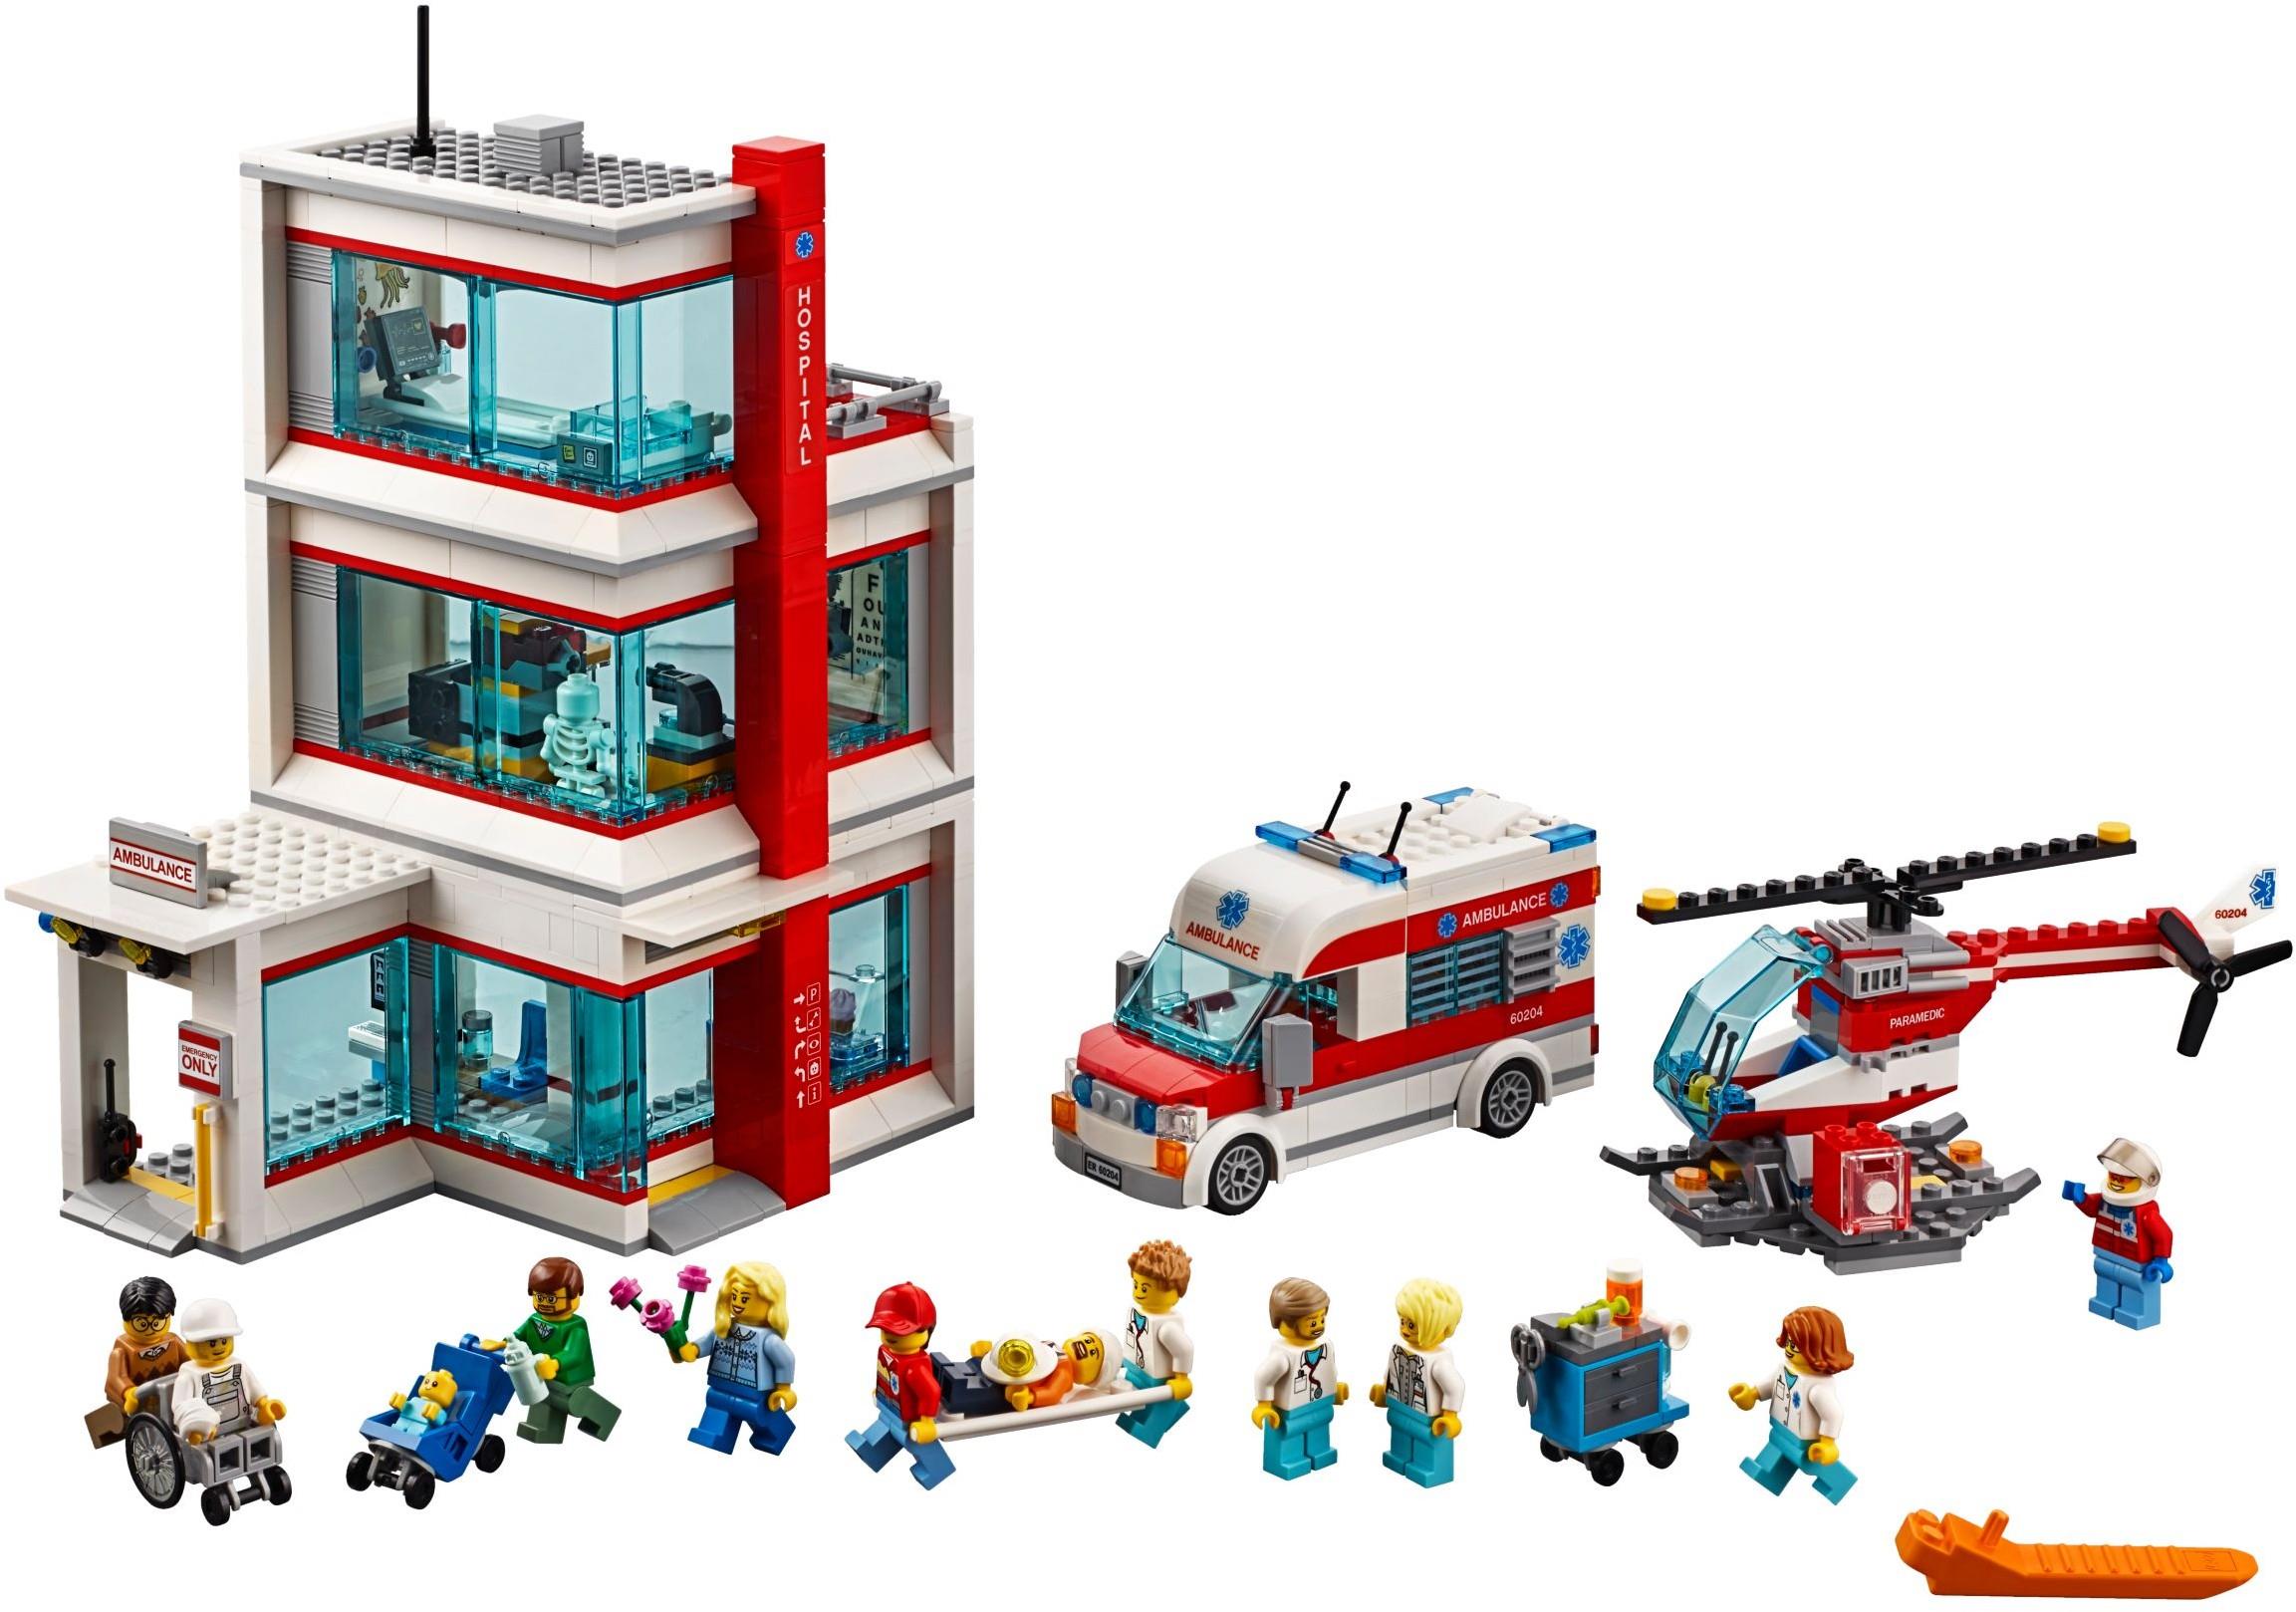 LEGO CITY HELICOPTER RESCUE 4429 Hospital Ambulance Emergency Room ER NEW SEALED 